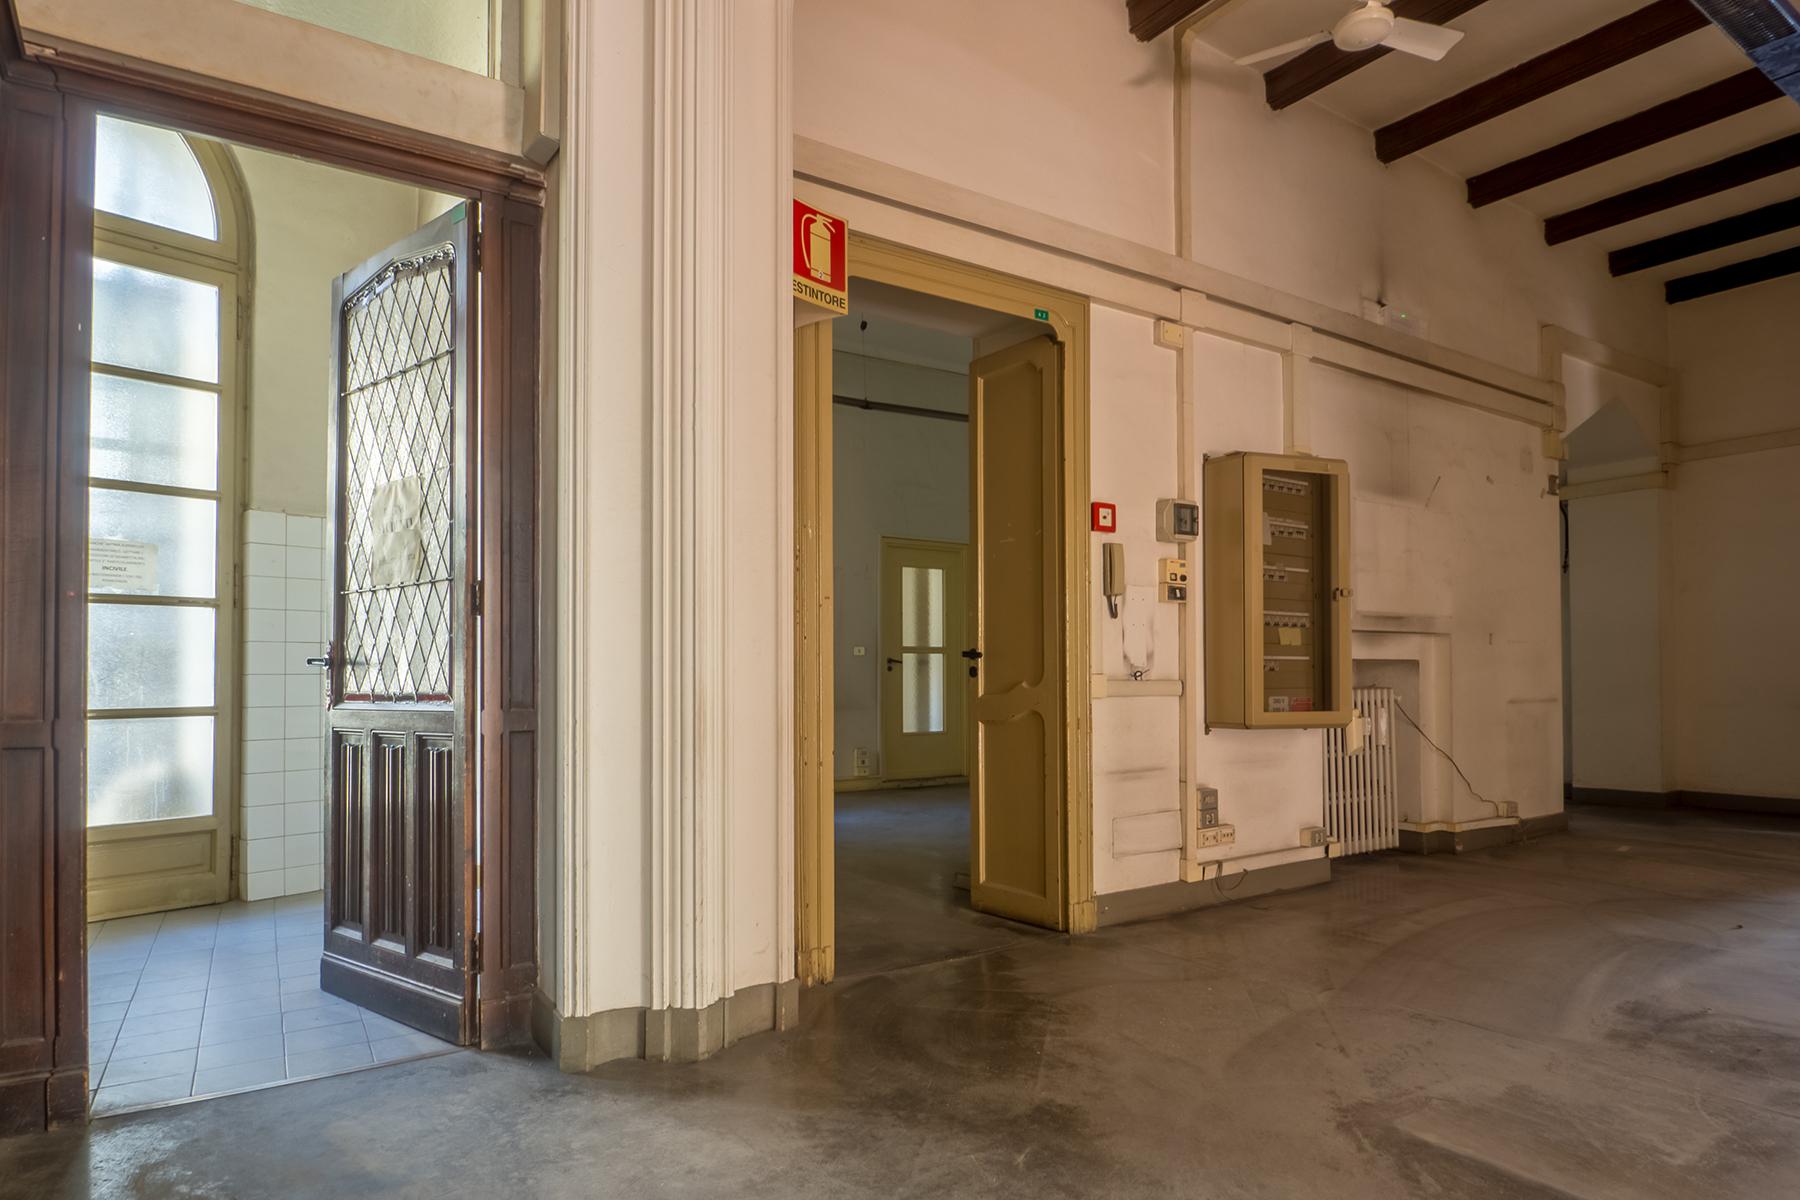 Ufficio di alta rappresentanza nel centro storico di Torino - 10